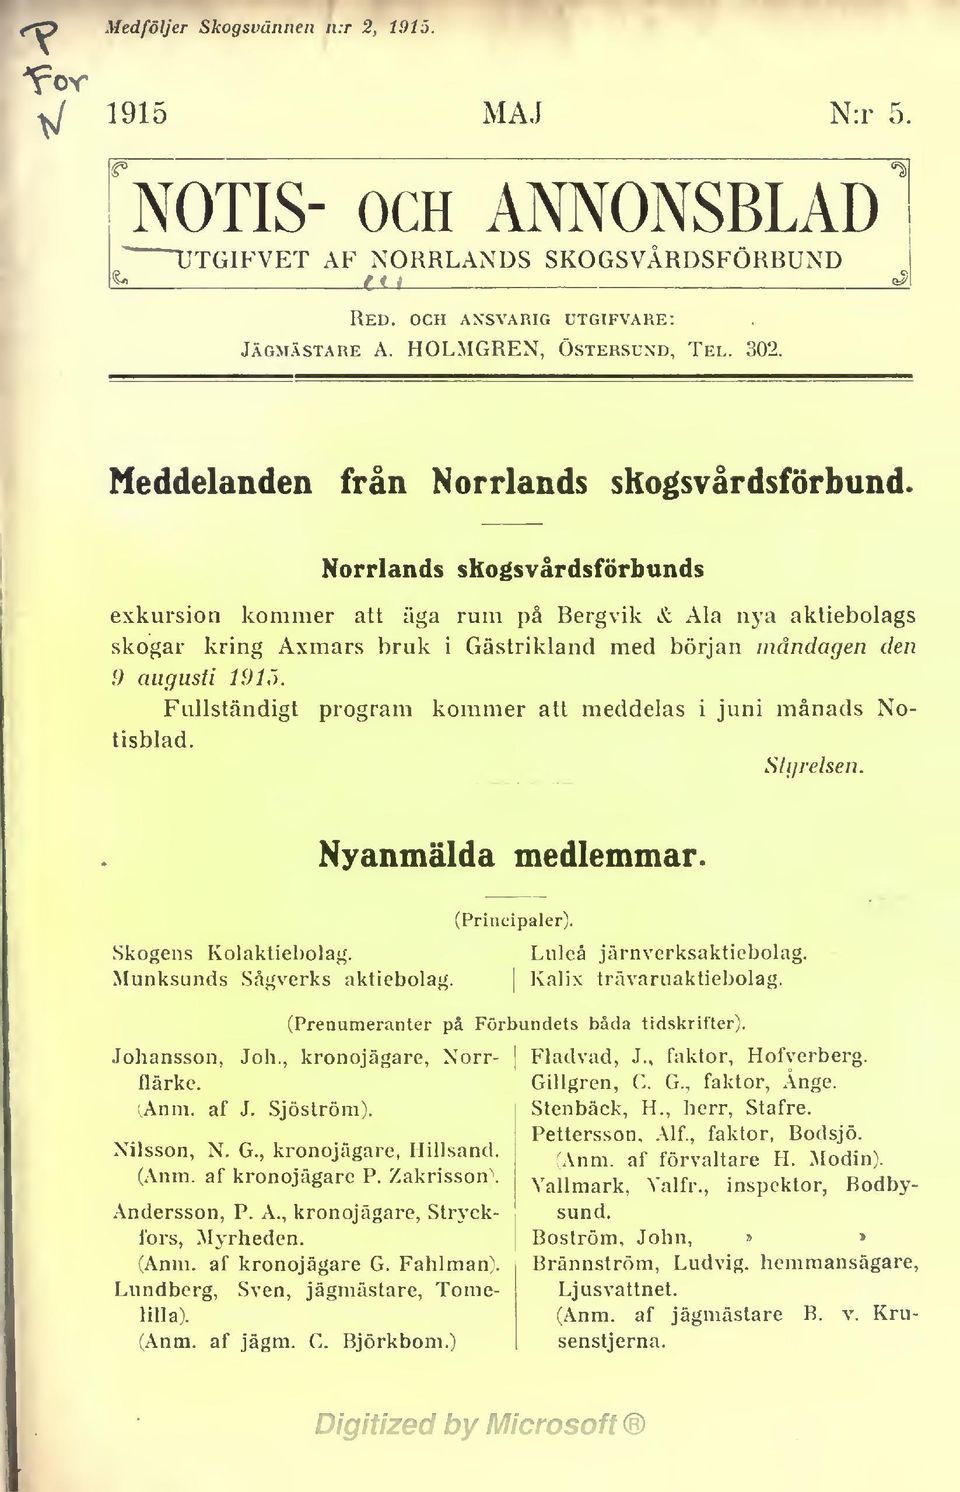 Norrlands skogsvårdsförbunds exkursion kommer att äga rum på Bergvik & Ala nya aktiebolags skogar kring Axmars bruk i Gästrikland med början måndagen den 9 augusti 1915.